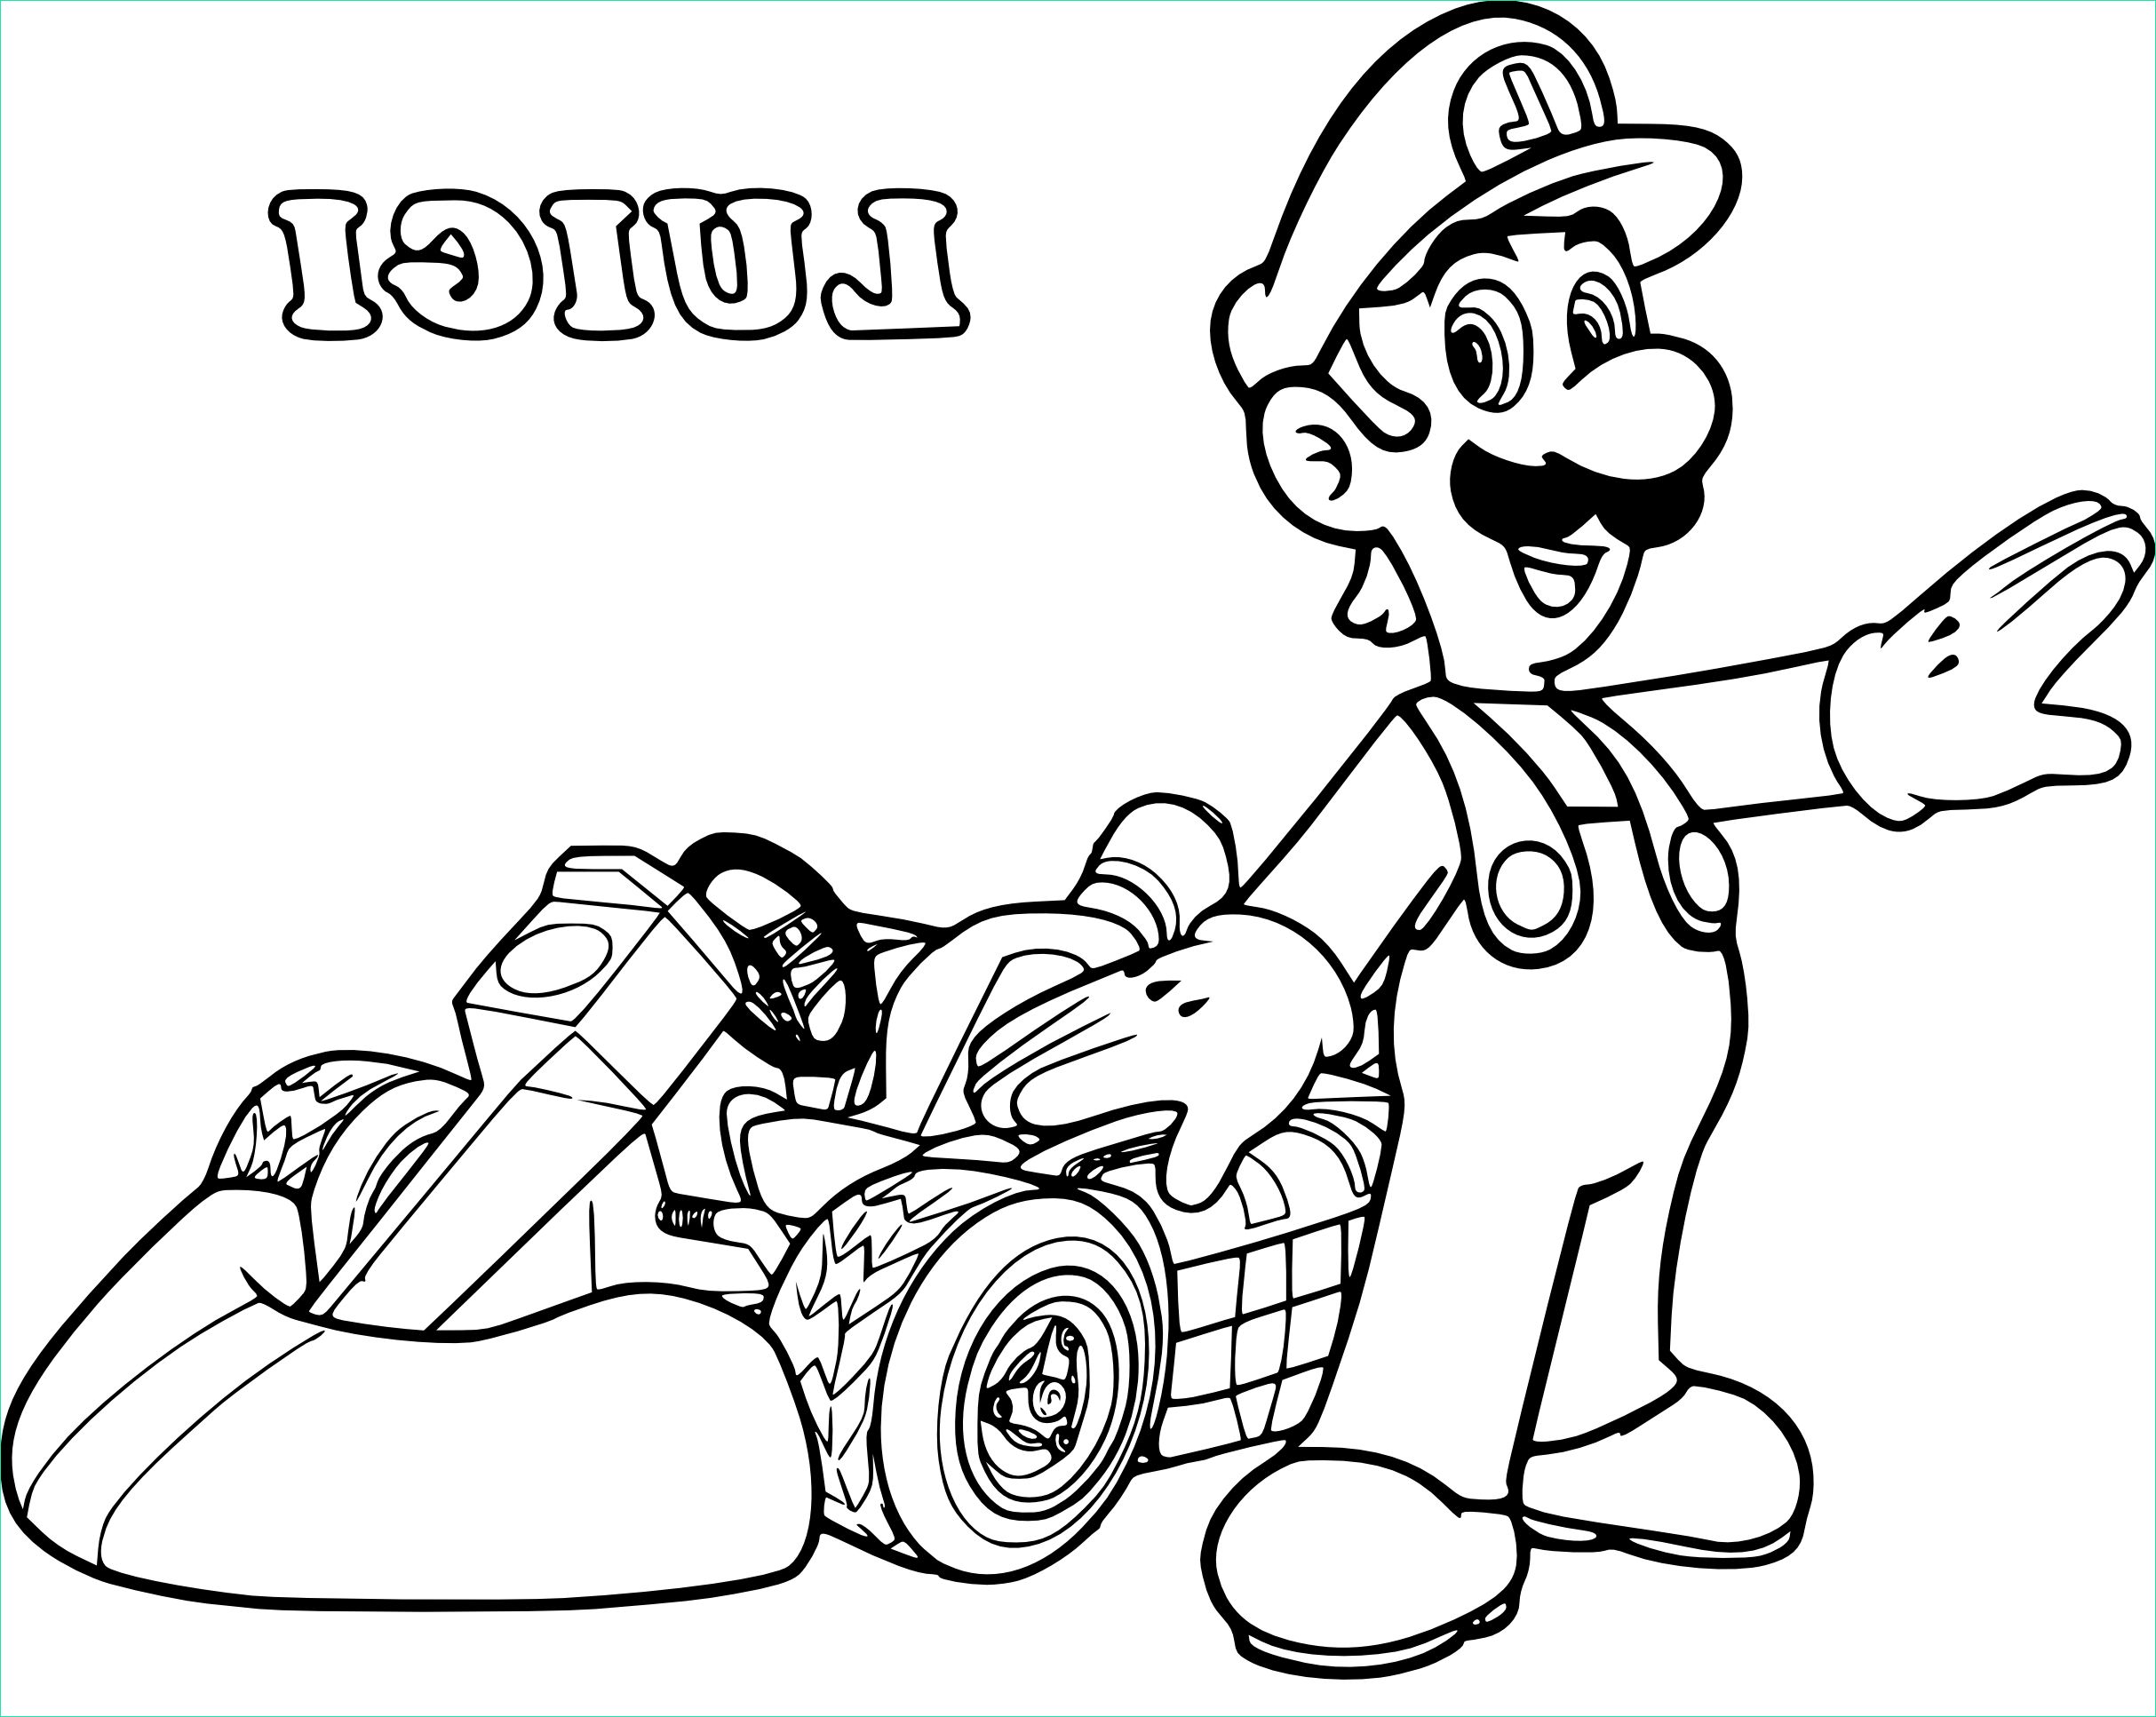 Coloriage Mario Luigi Nouveau Galerie Coloriage Luigi Kart à Imprimer